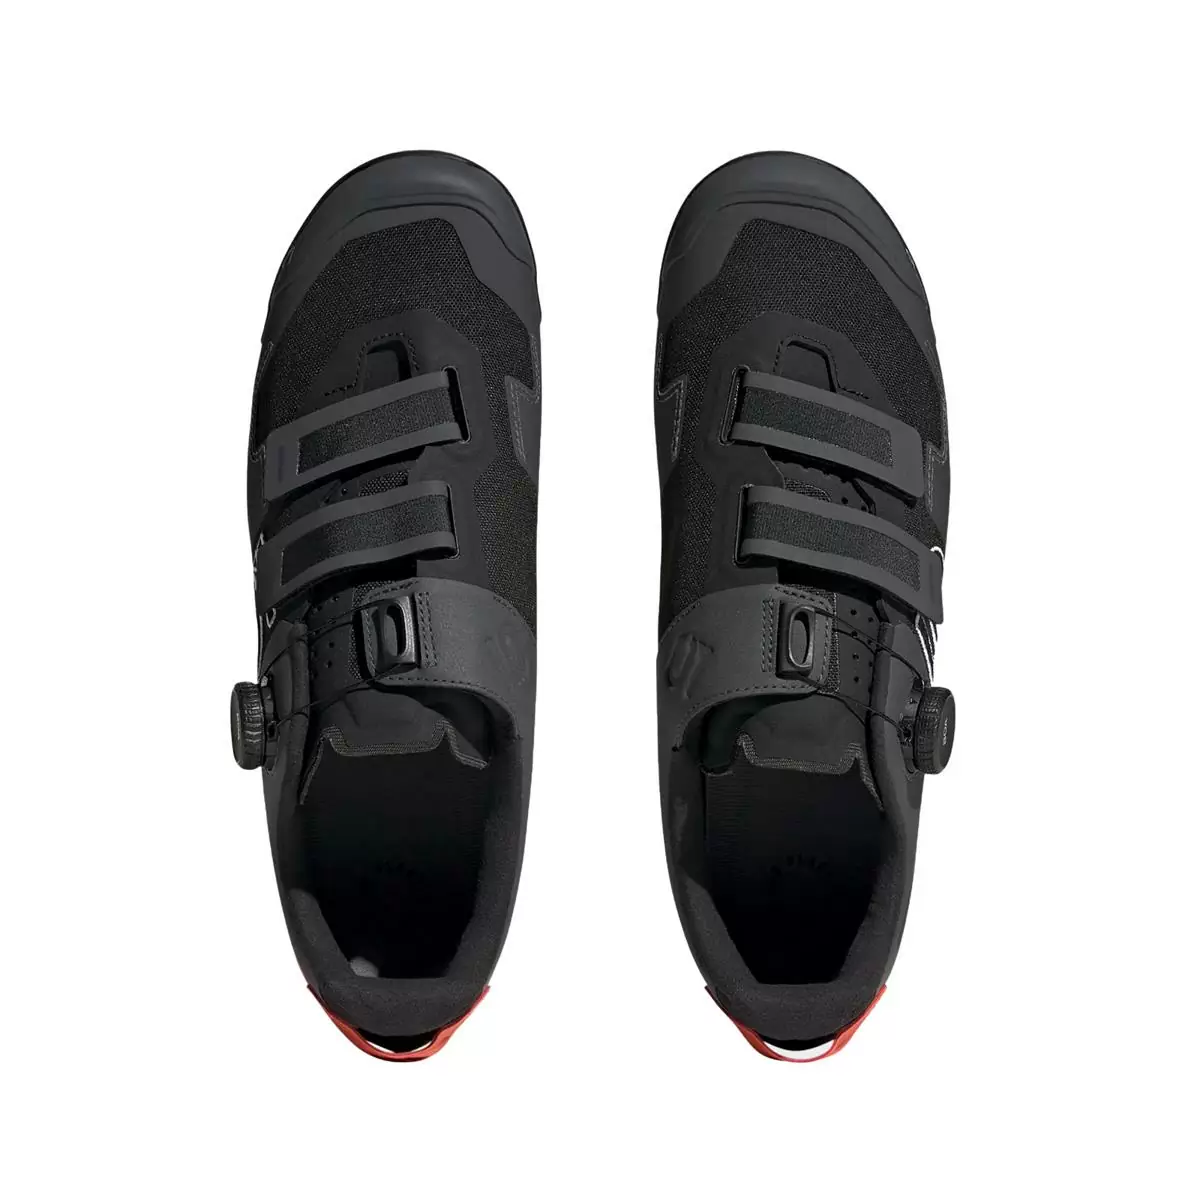 Clip 5.10 Kestrel Boa MTB Shoes Black/Orange Size 41.5 #3